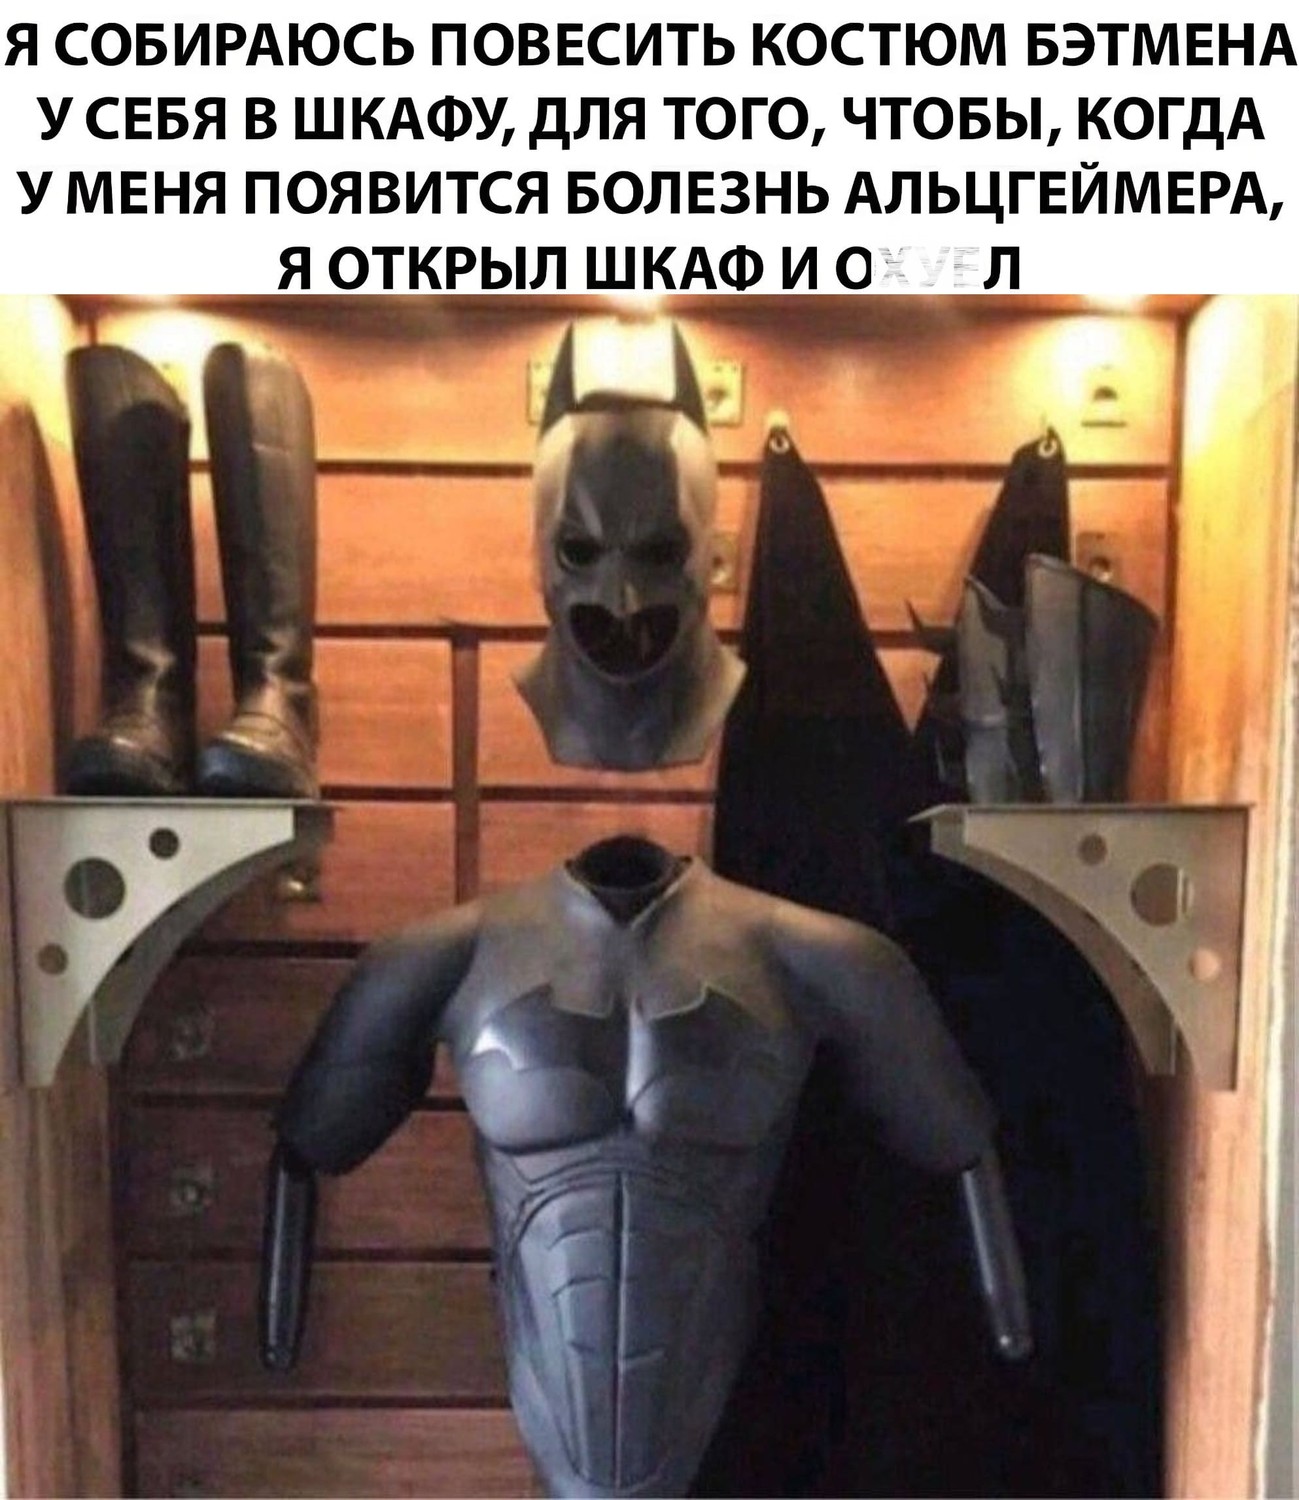 Я собираюсь повесить костюм Бэтмена у себя в шкафу, для того, чтобы, когда у меня появится болезнь Альцгеймера, я открыл шкаф и ох*ел.